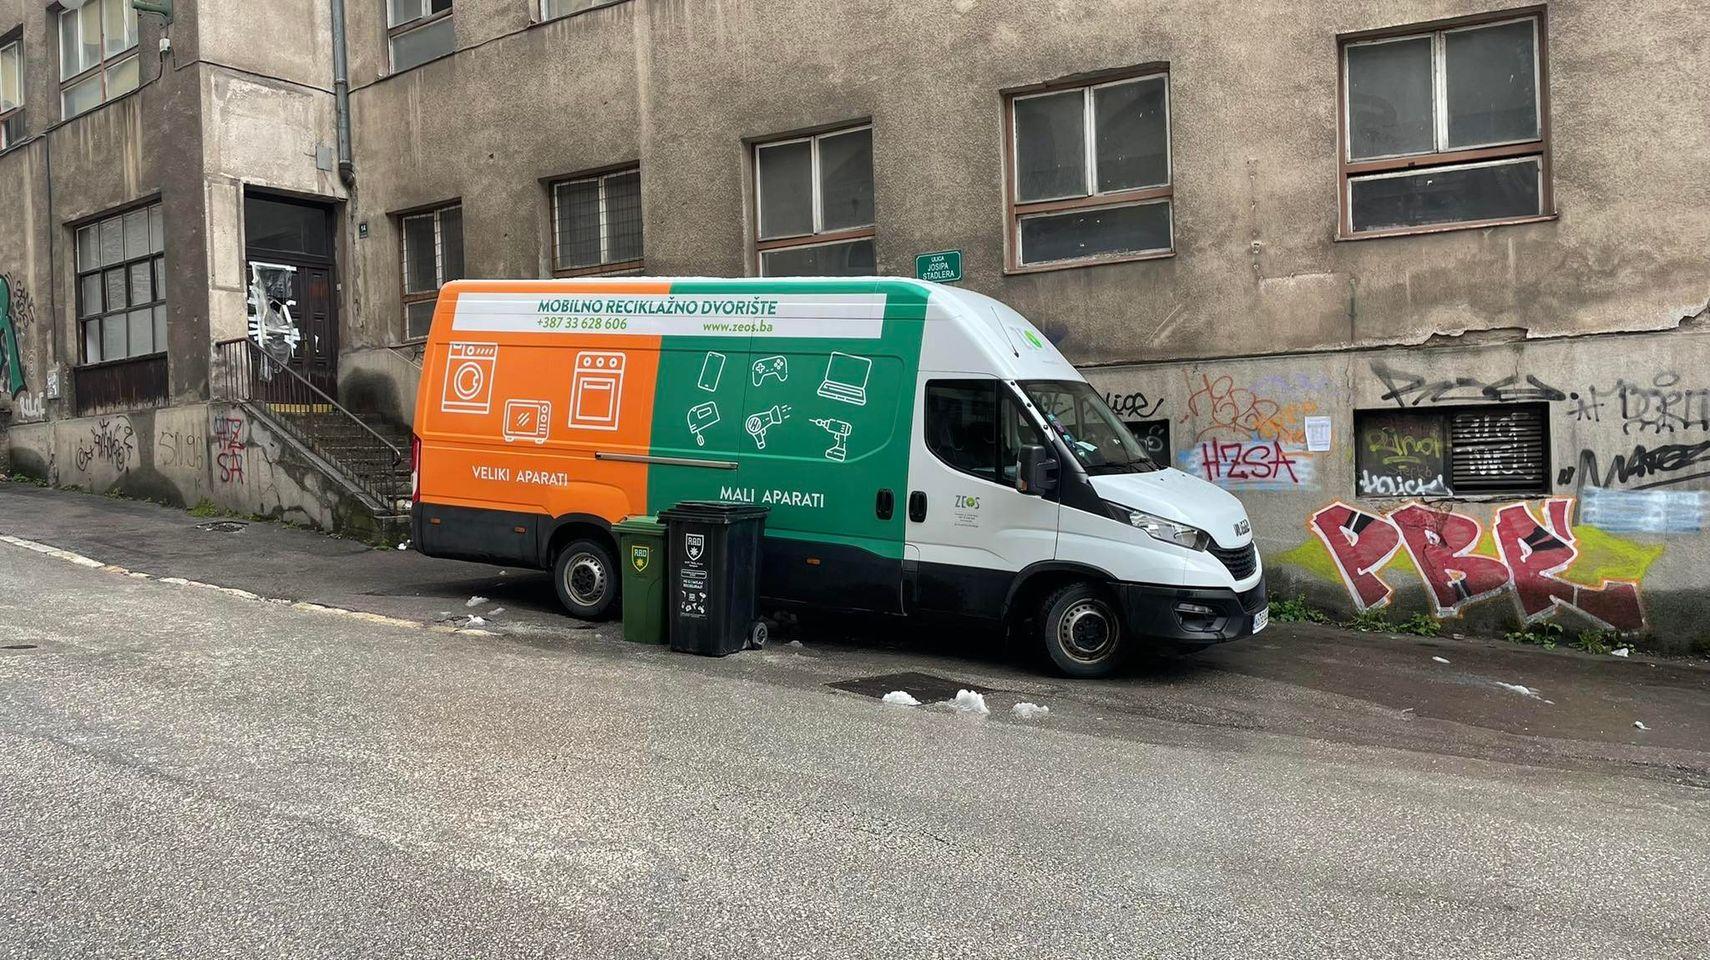 Mobilno reciklažno dvorište danas će biti u ulici Kovači